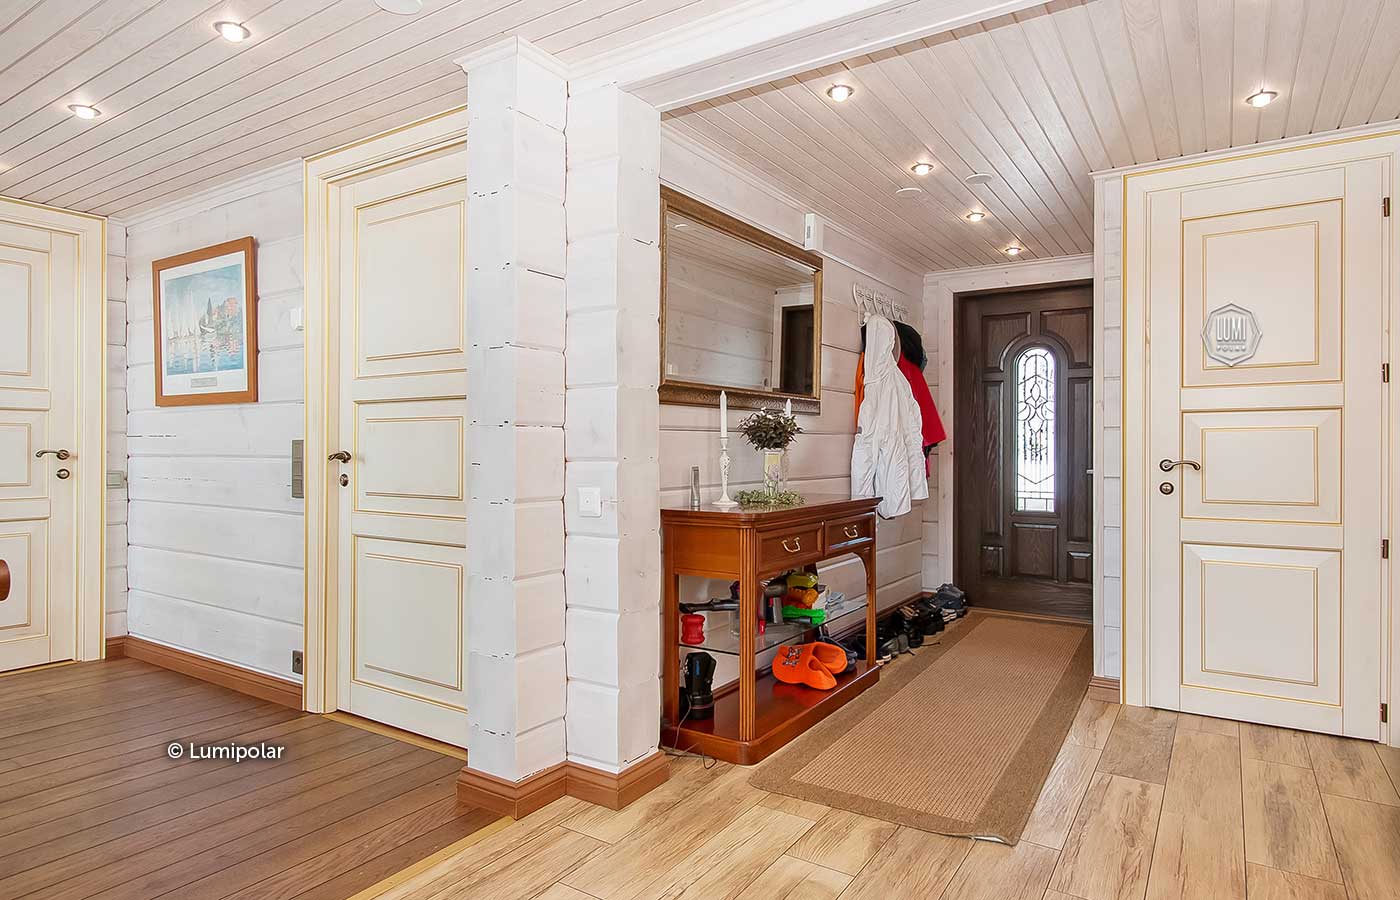 Внутренняя отделка дома из бревна (51 фото): как можно отделать бревенчатое строение внутри, использование декоративного каната, чем обшить потолок